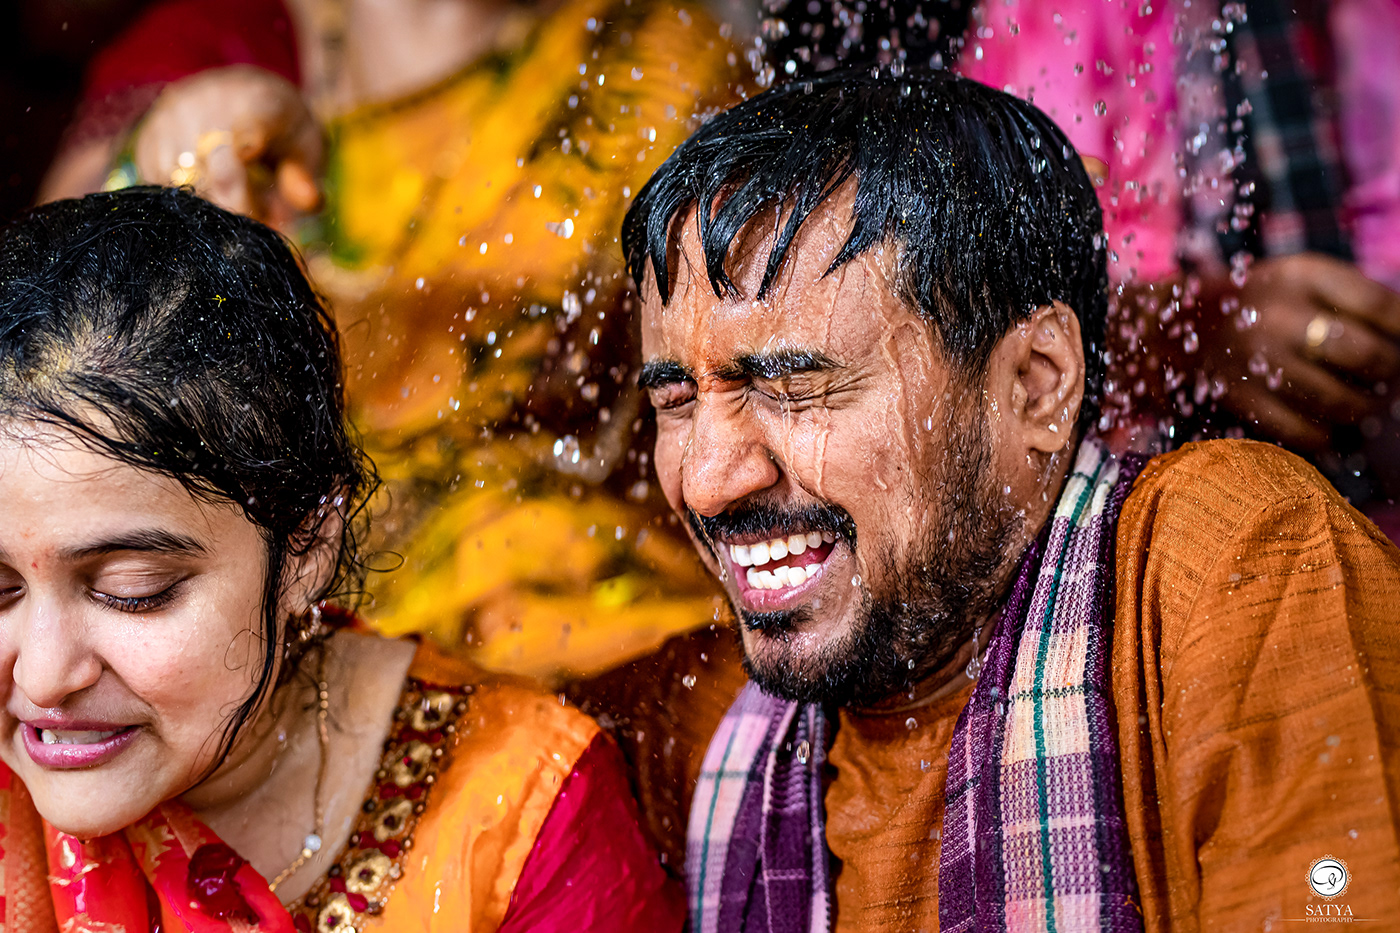 satyaphotography teluguwedding bride couple couple poses India indian bride indian wedding wedding Wedding Photography